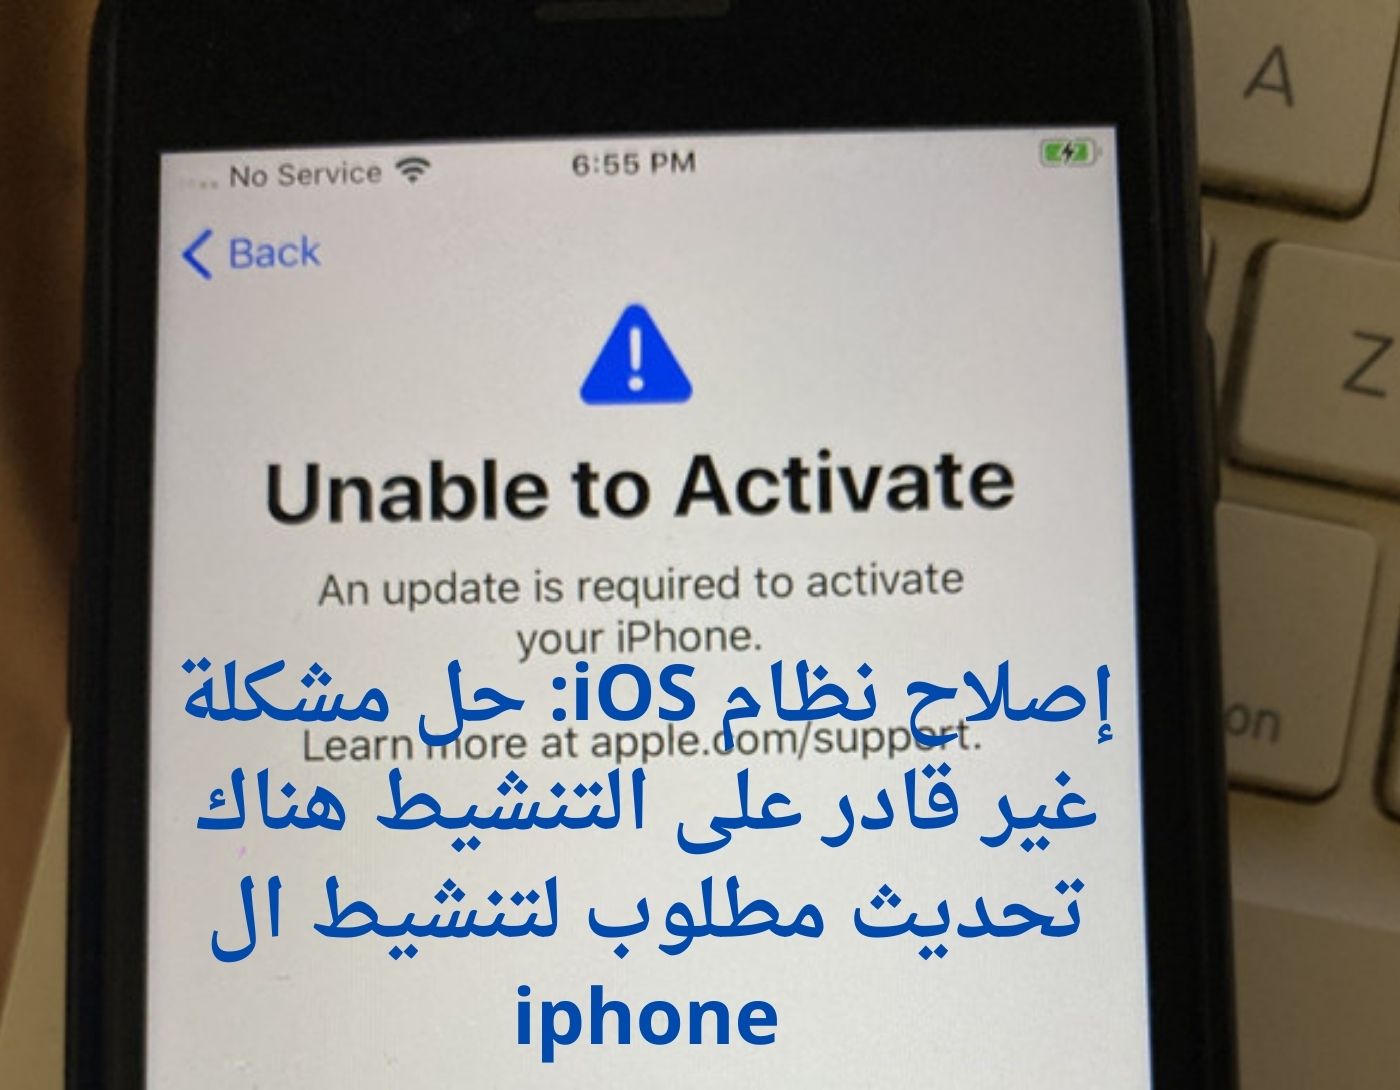 صورة رسالة مشكلة غير قادر على التنشيط هناك تحديث مطلوب لتنشيط ال iphone